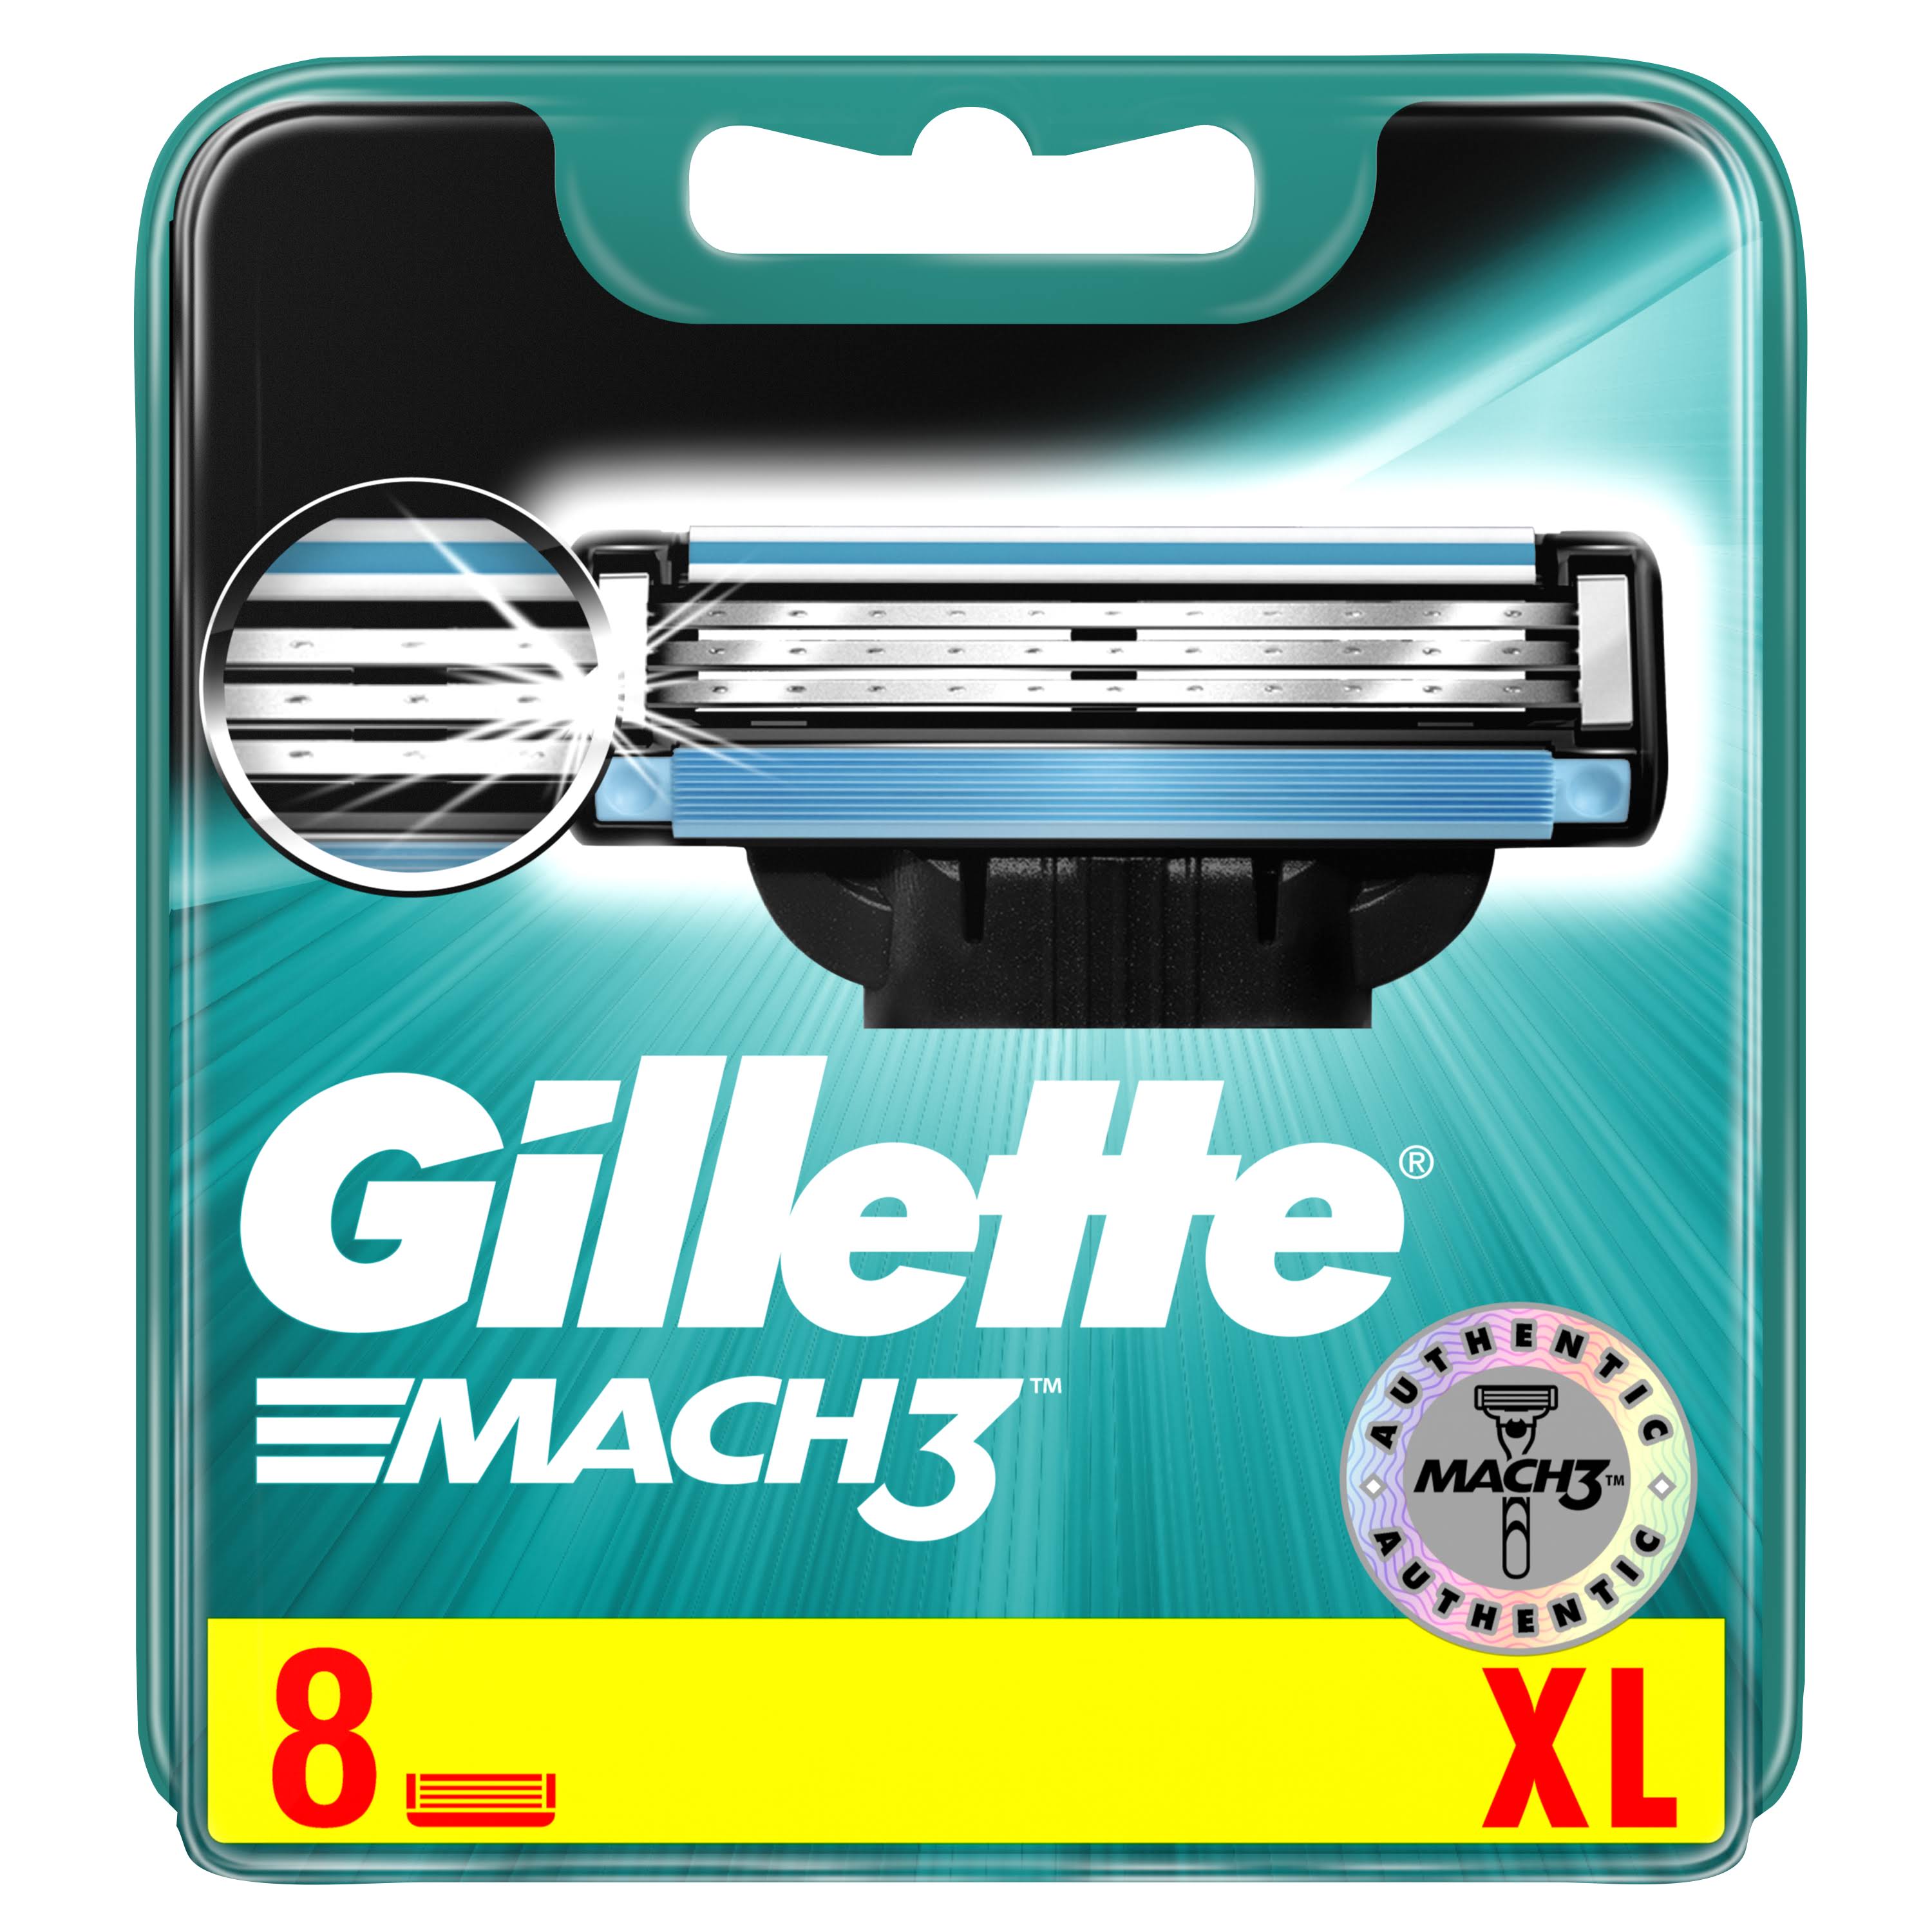 Gillette Mach 3 Shaving Blades - 8 Refills